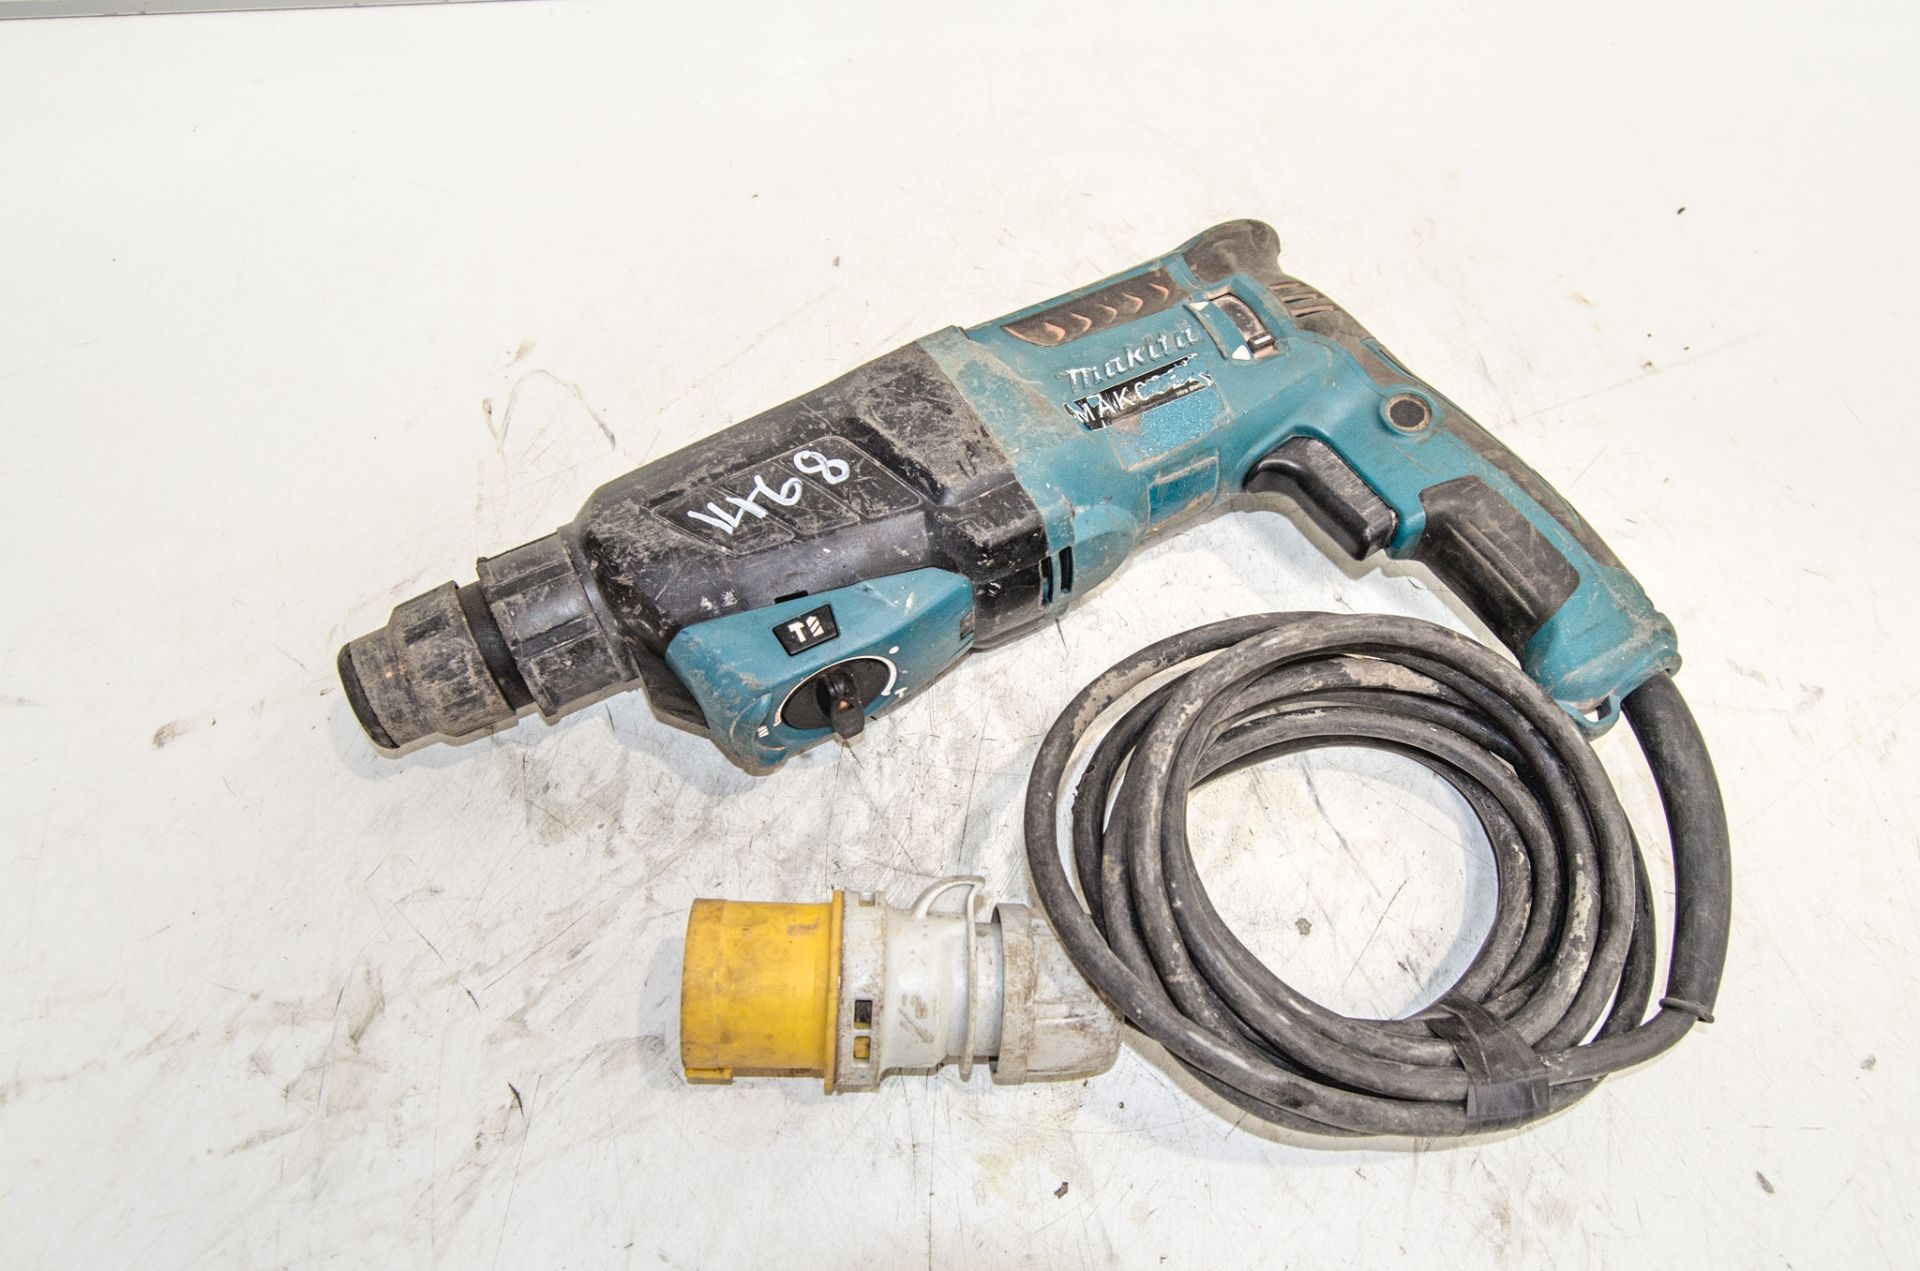 Makita HR2630 110v SDS rotary hammer drill